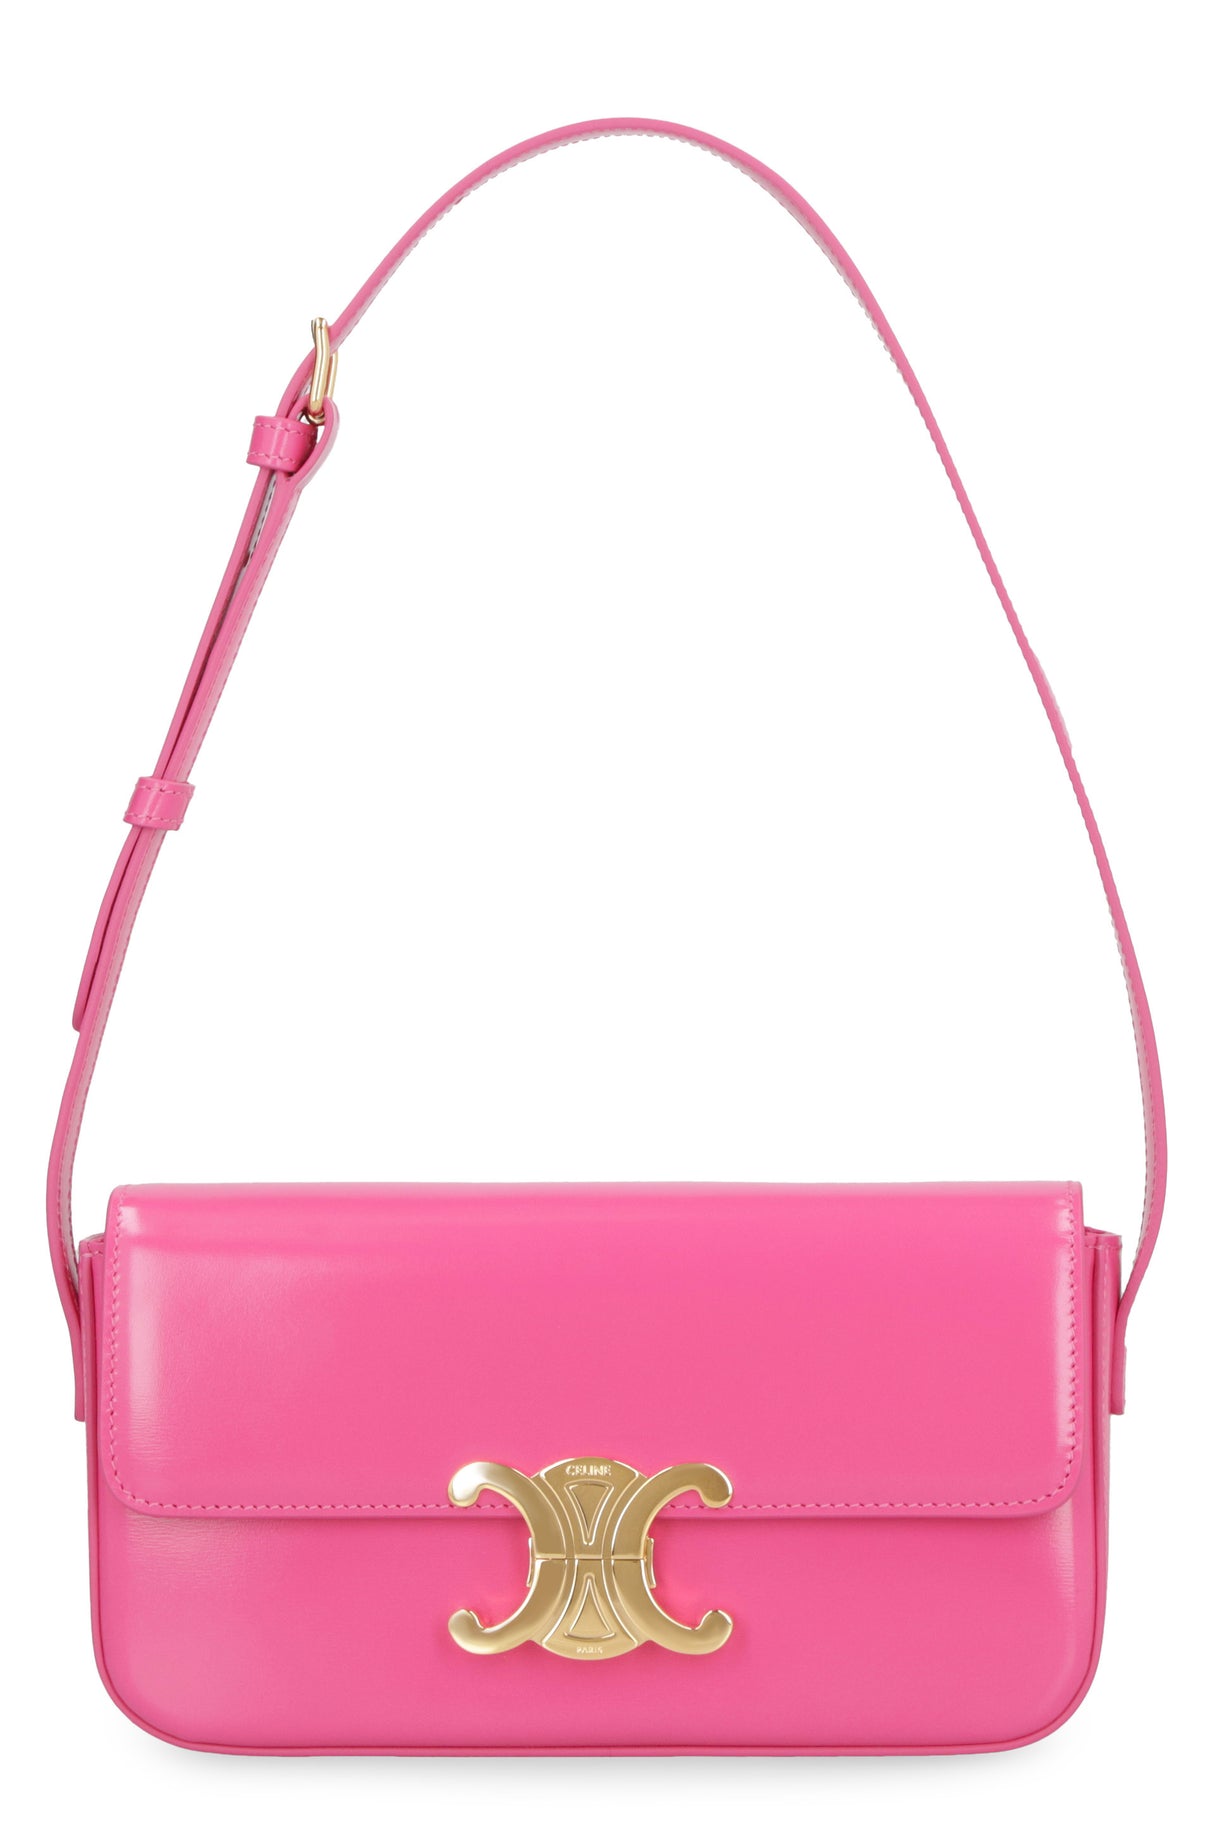 CELINE Stylish Pink Shoulder Handbag for Women - SS23